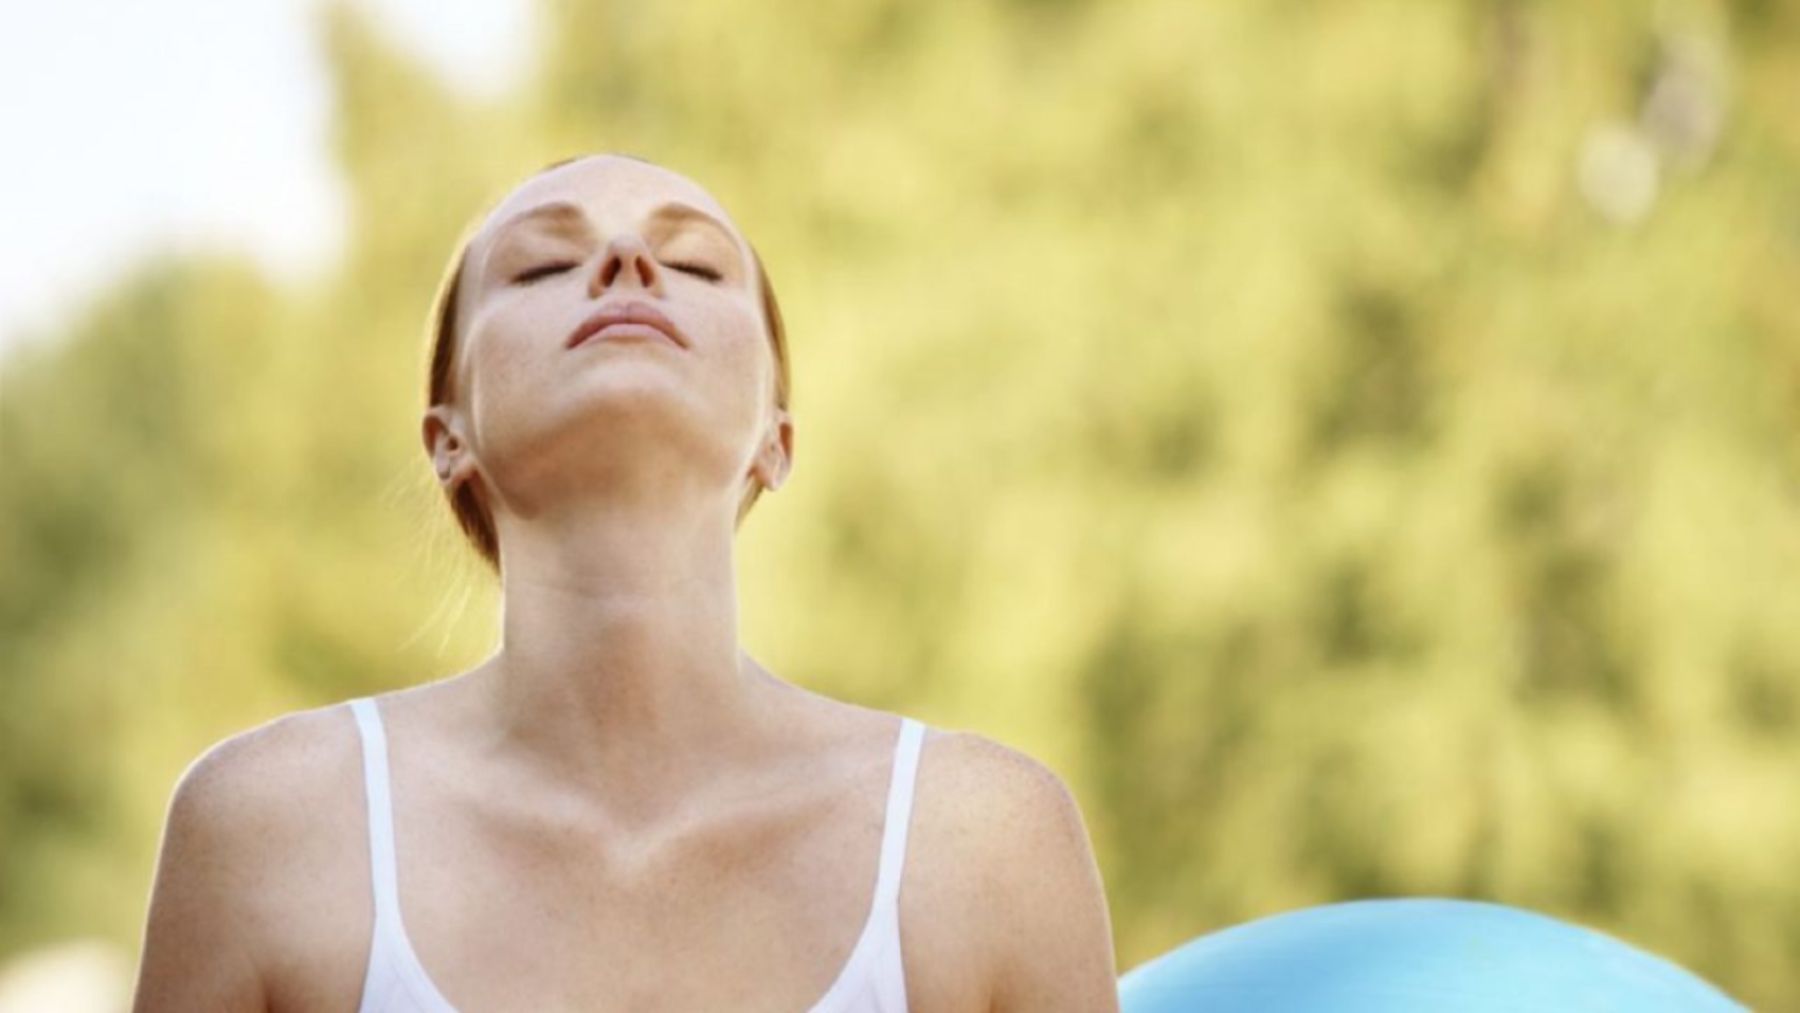 Ejercicios de respiración al día pueden ayudan a reducir la ansiedad